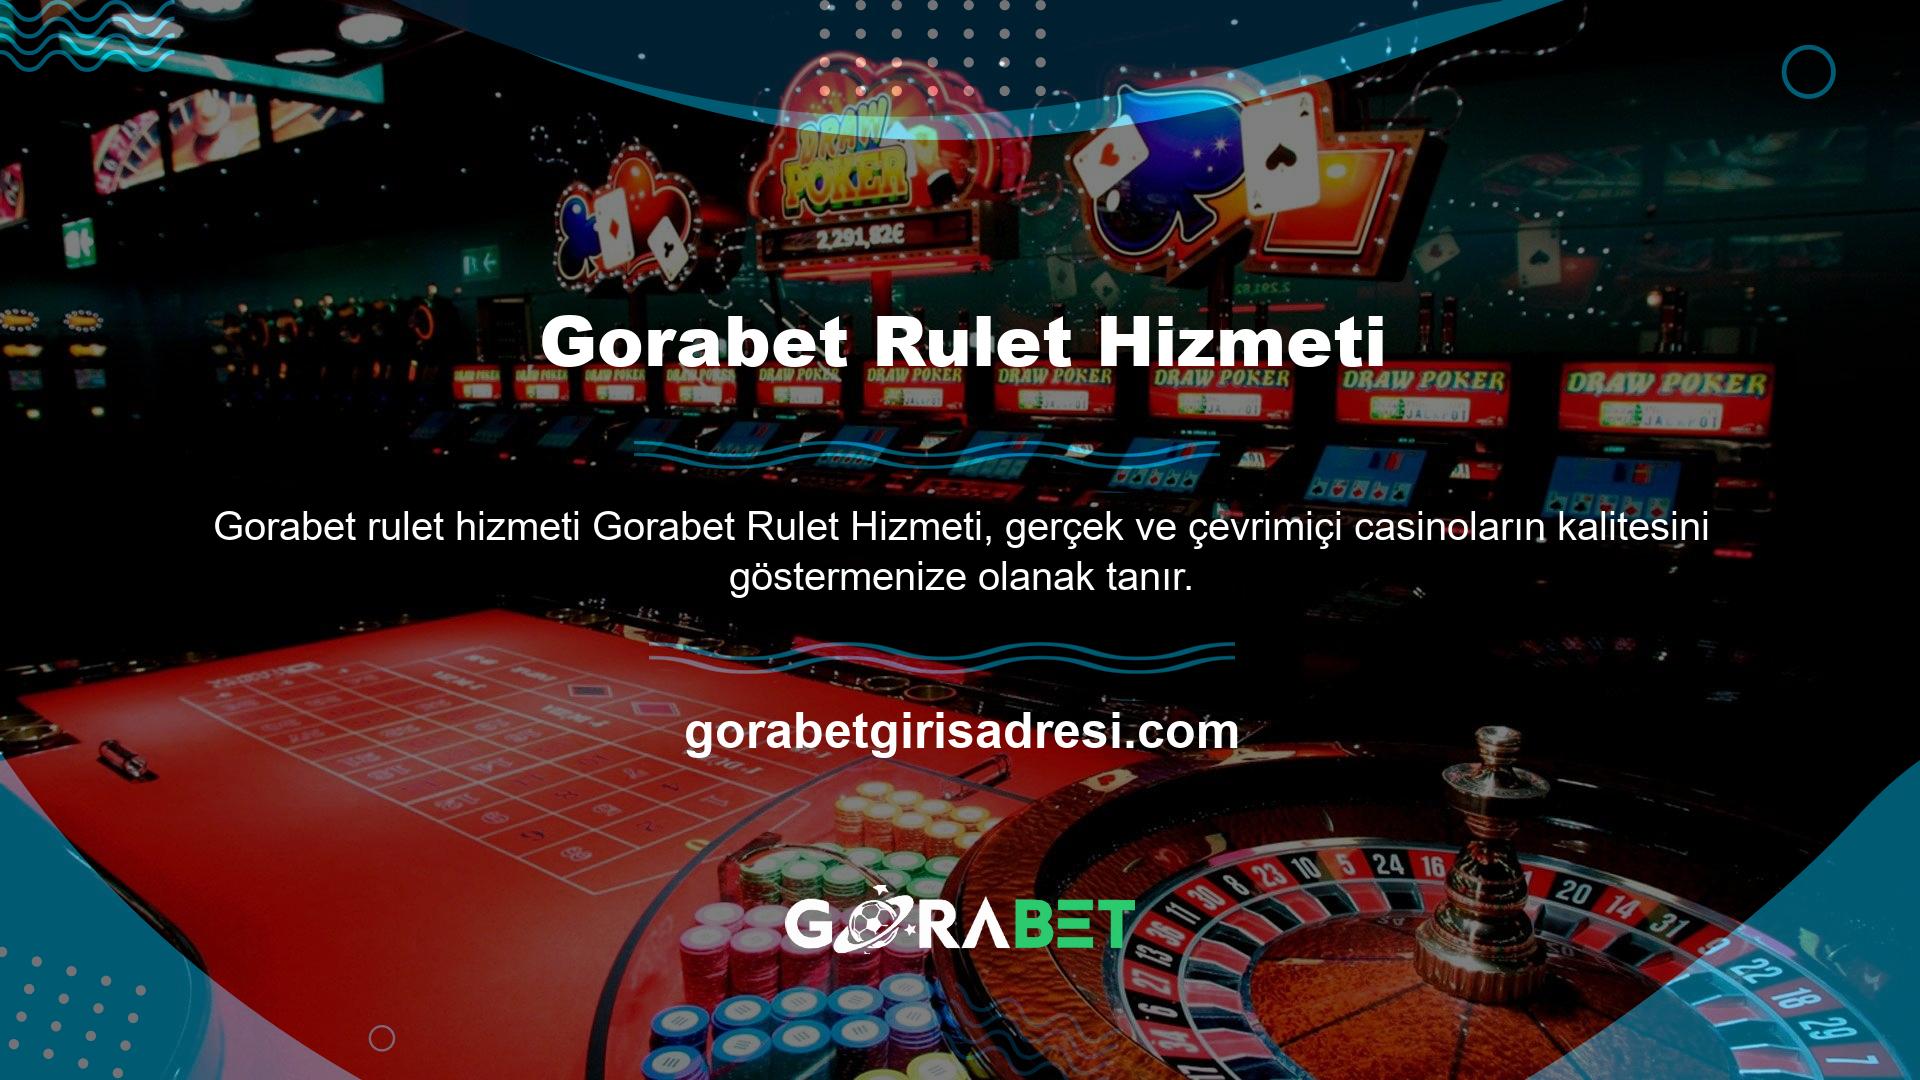 Gorabet casino sitesi kuruldu ancak hızla gelişerek Alman ciltçilik endüstrisinin öncülerinden biri haline geldi